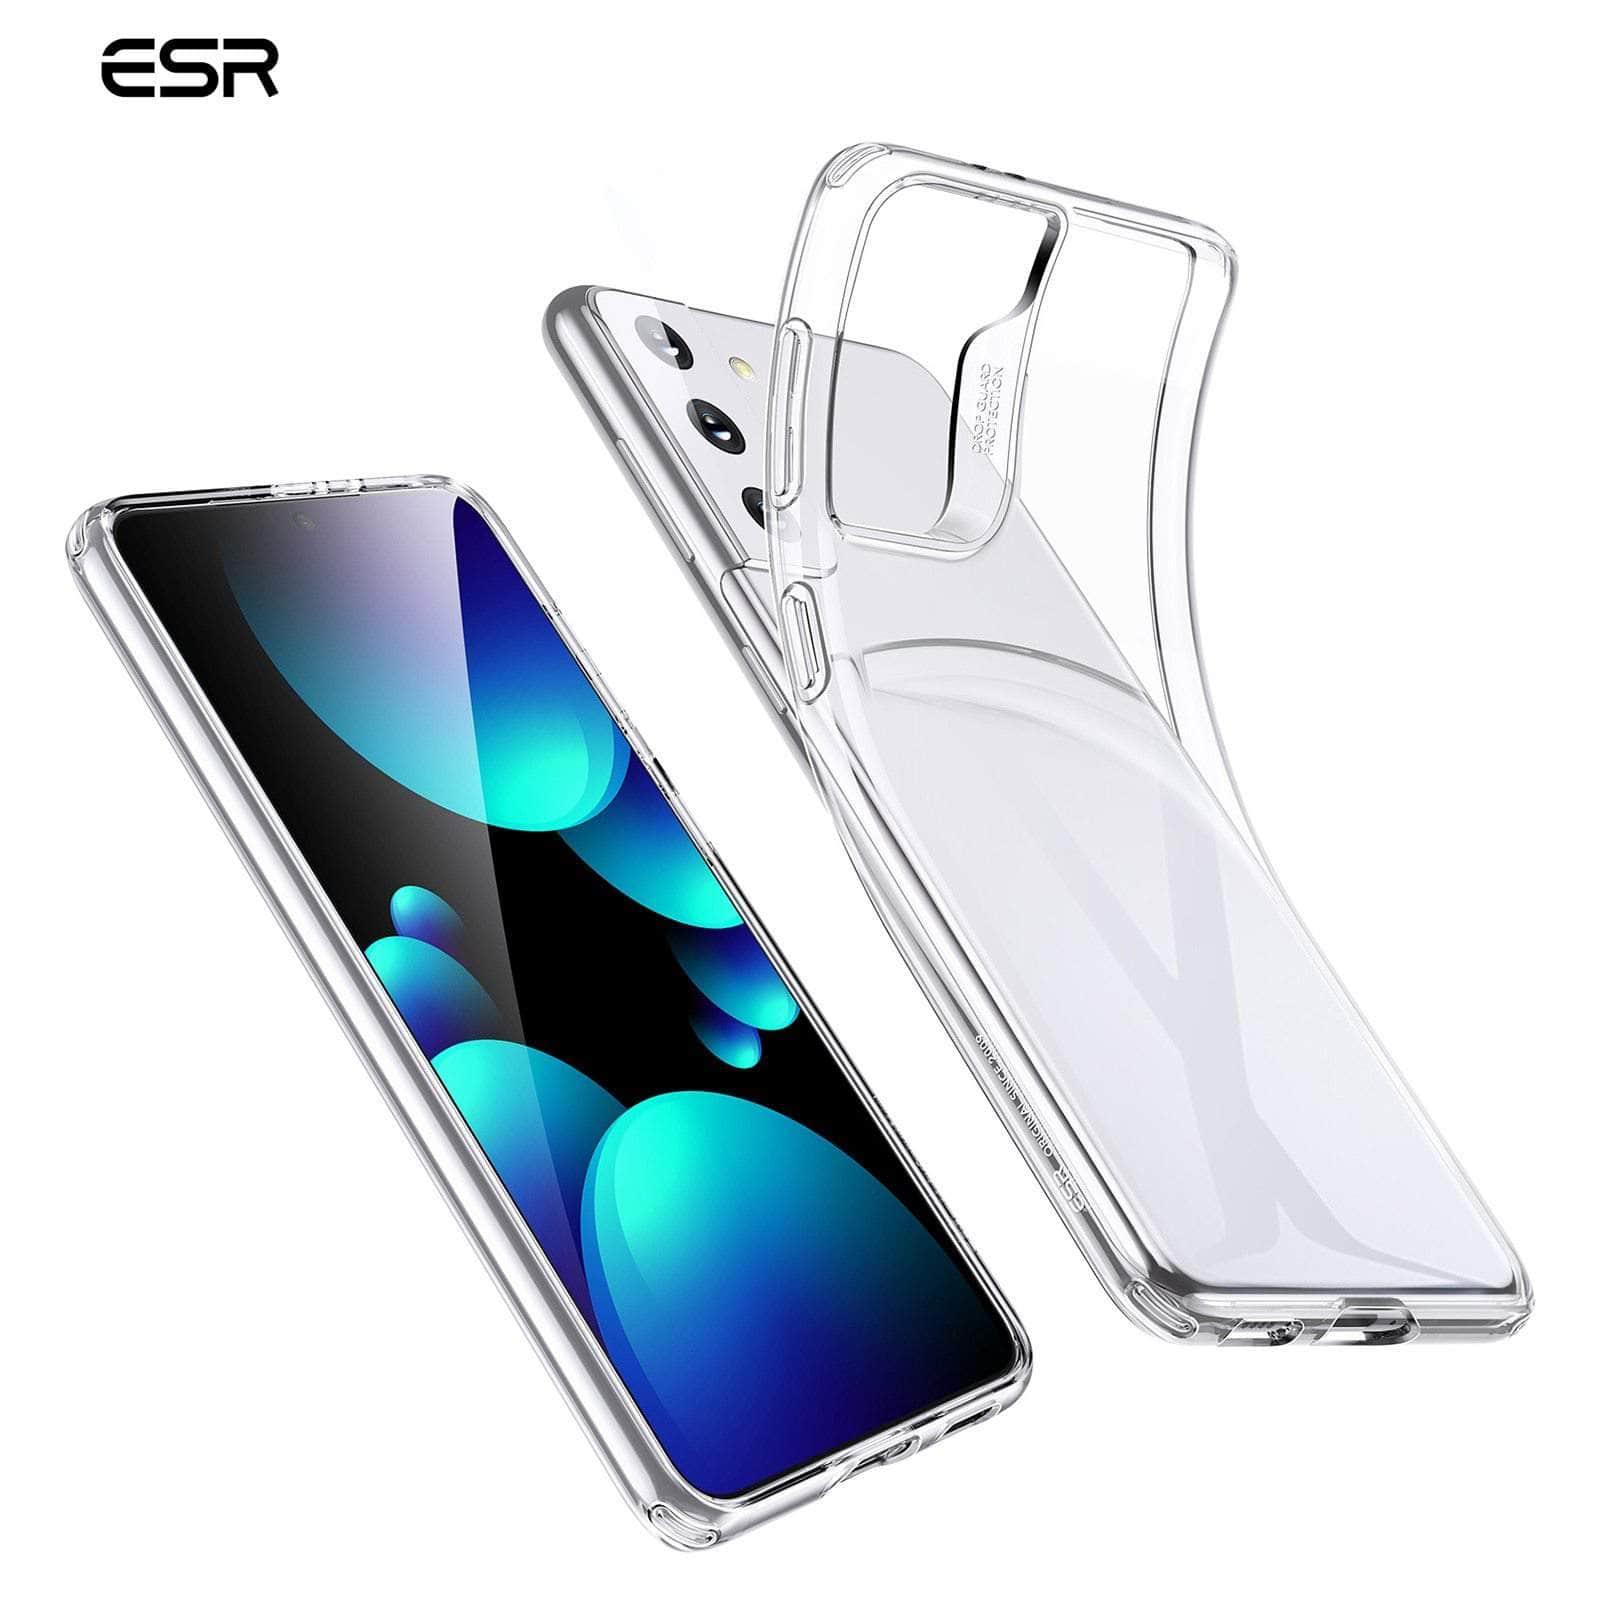 ESR Galaxy Soft TPU Silicone Clear Back Cover - CaseBuddy